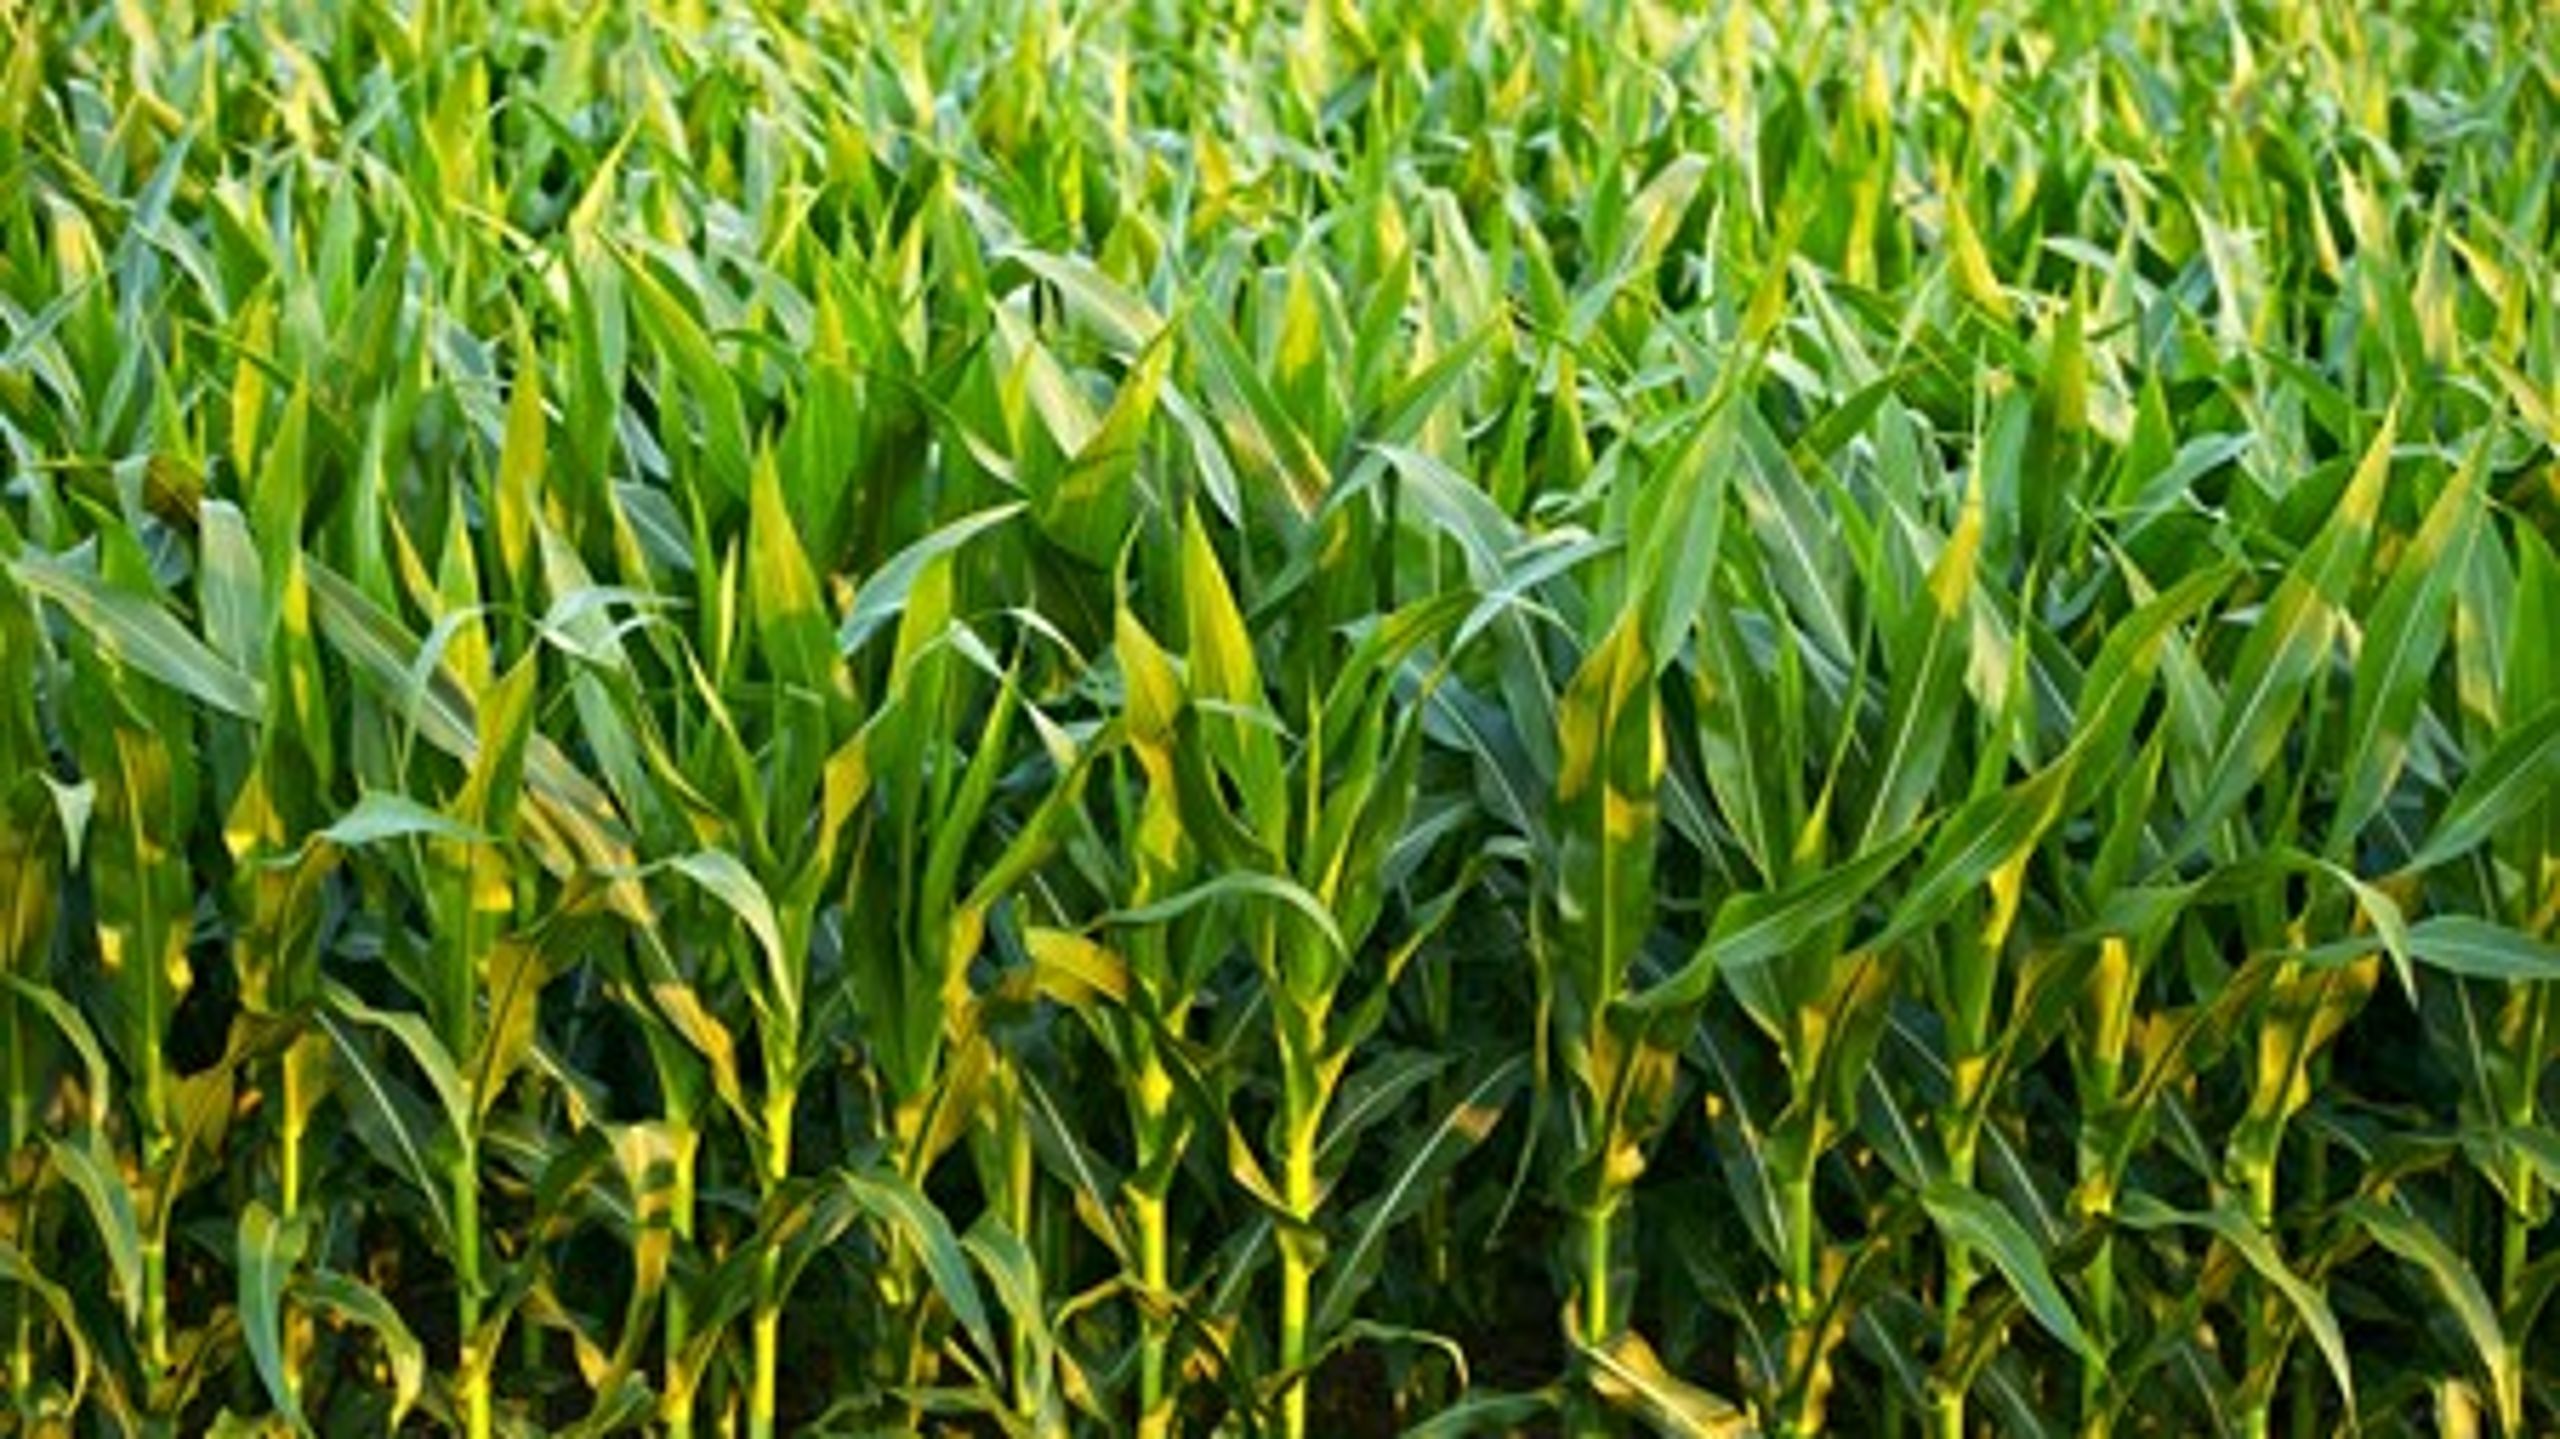 EU-lande skal have bedre mulighed for at sige nej til GMO-afgrøder som for eksempel majs, der&nbsp;er den eneste relativt&nbsp;udbredte genmodificerede afgrøde&nbsp;i EU lige nu. Det mener EU-Parlamentet.